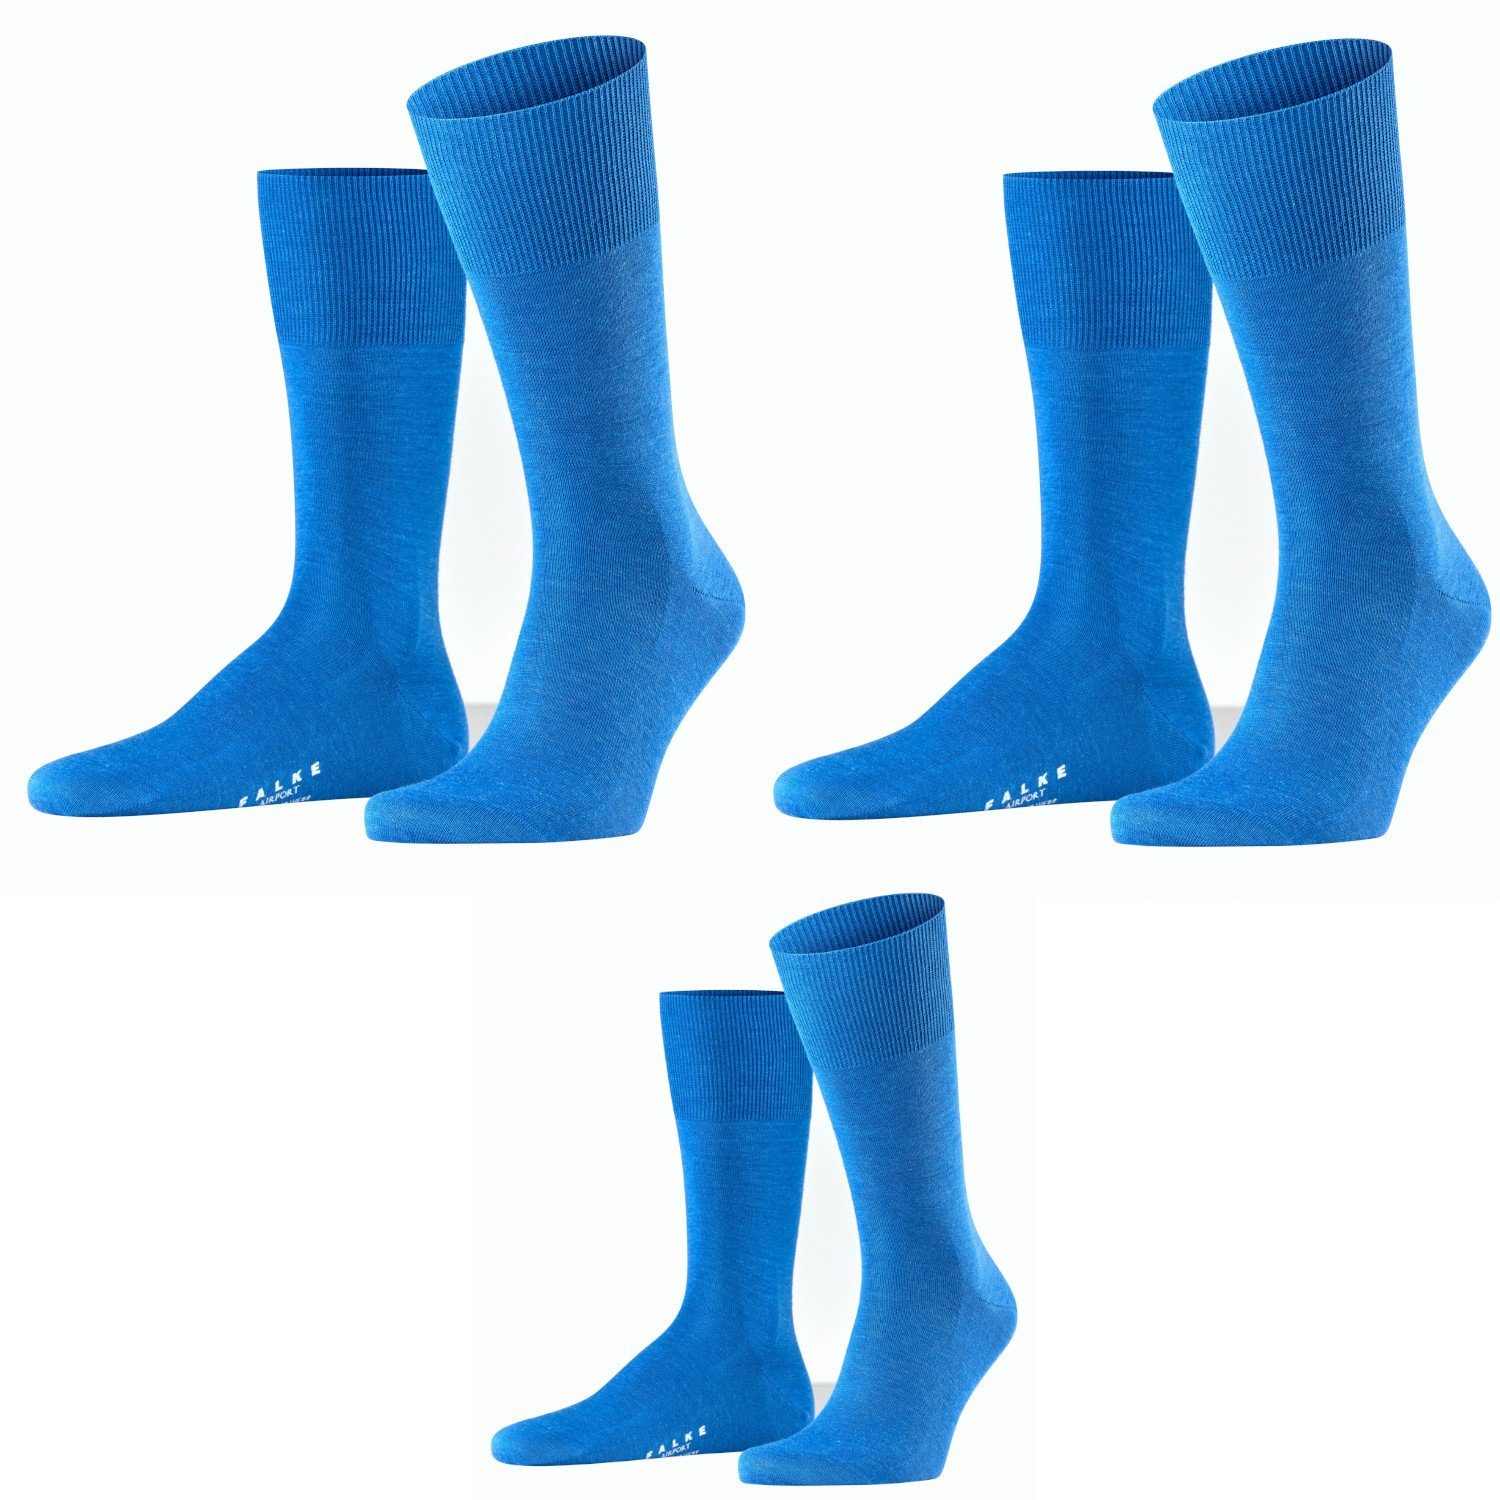 FALKE Airport Lieblingsversand Socken (3 Basicsocken FALKE Farbe, Sapphiere Paar) 3er Set, Herren